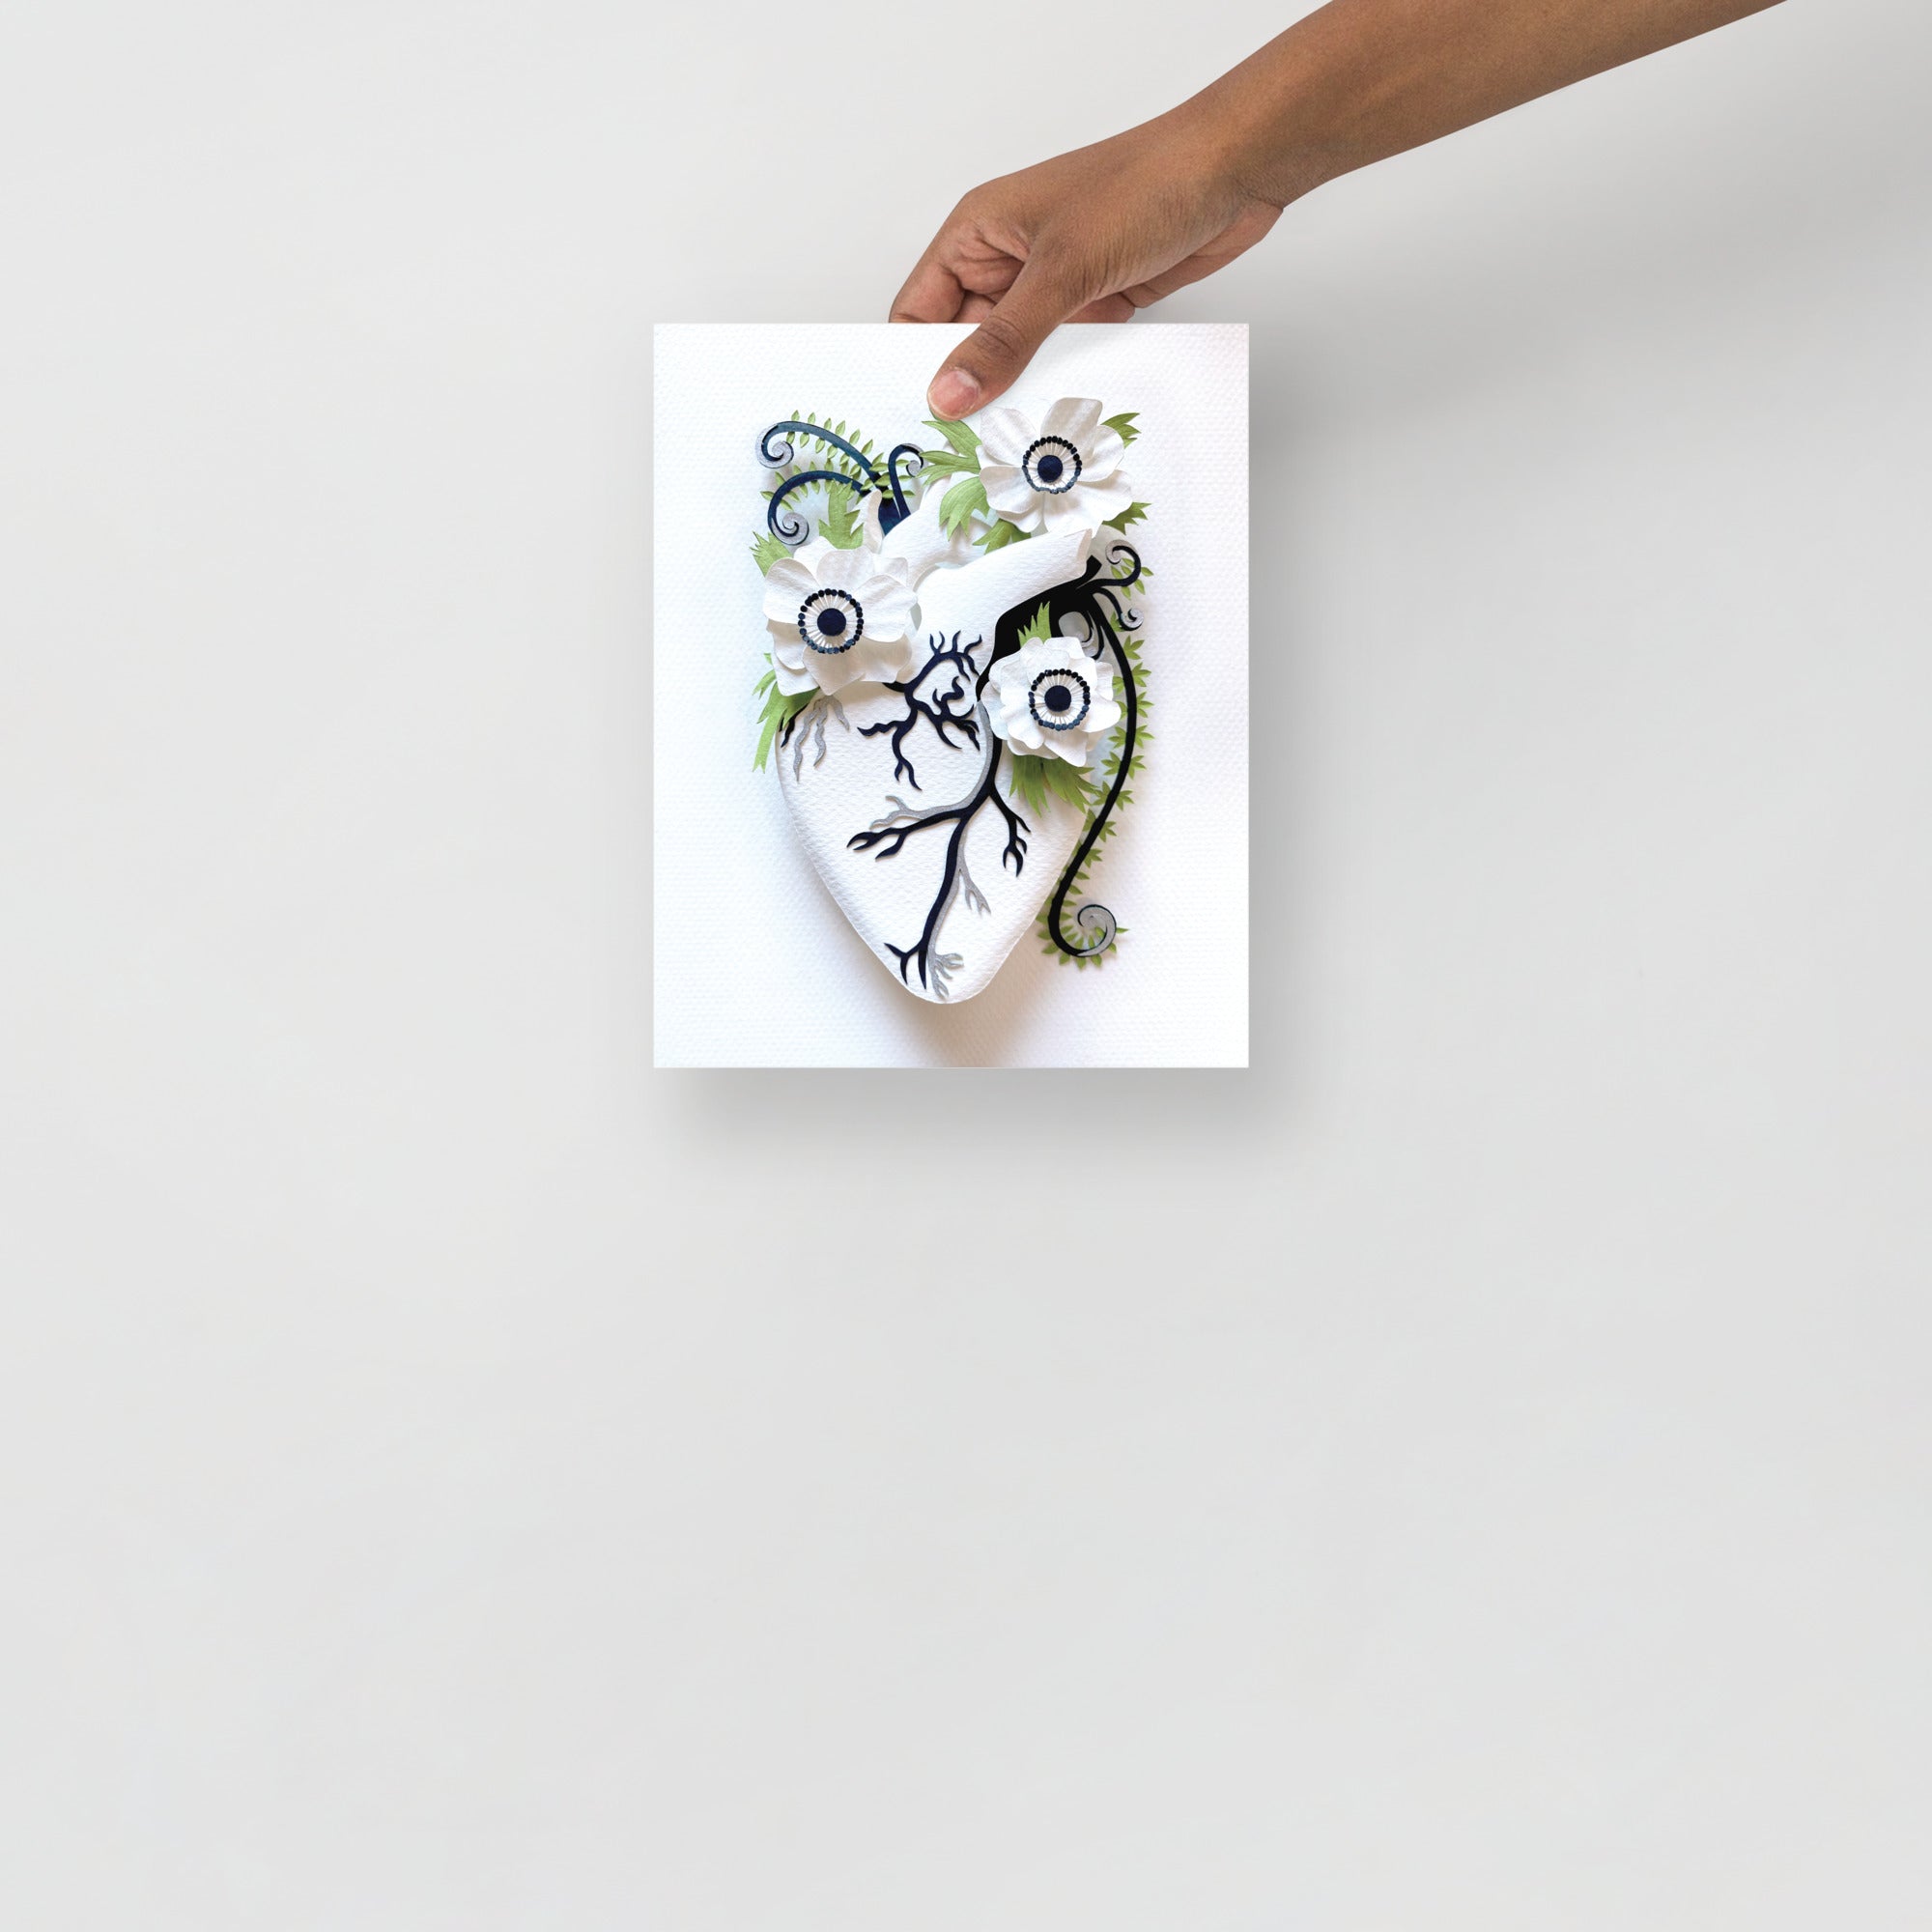 Healing Heart: Anemones 8" x 10" print